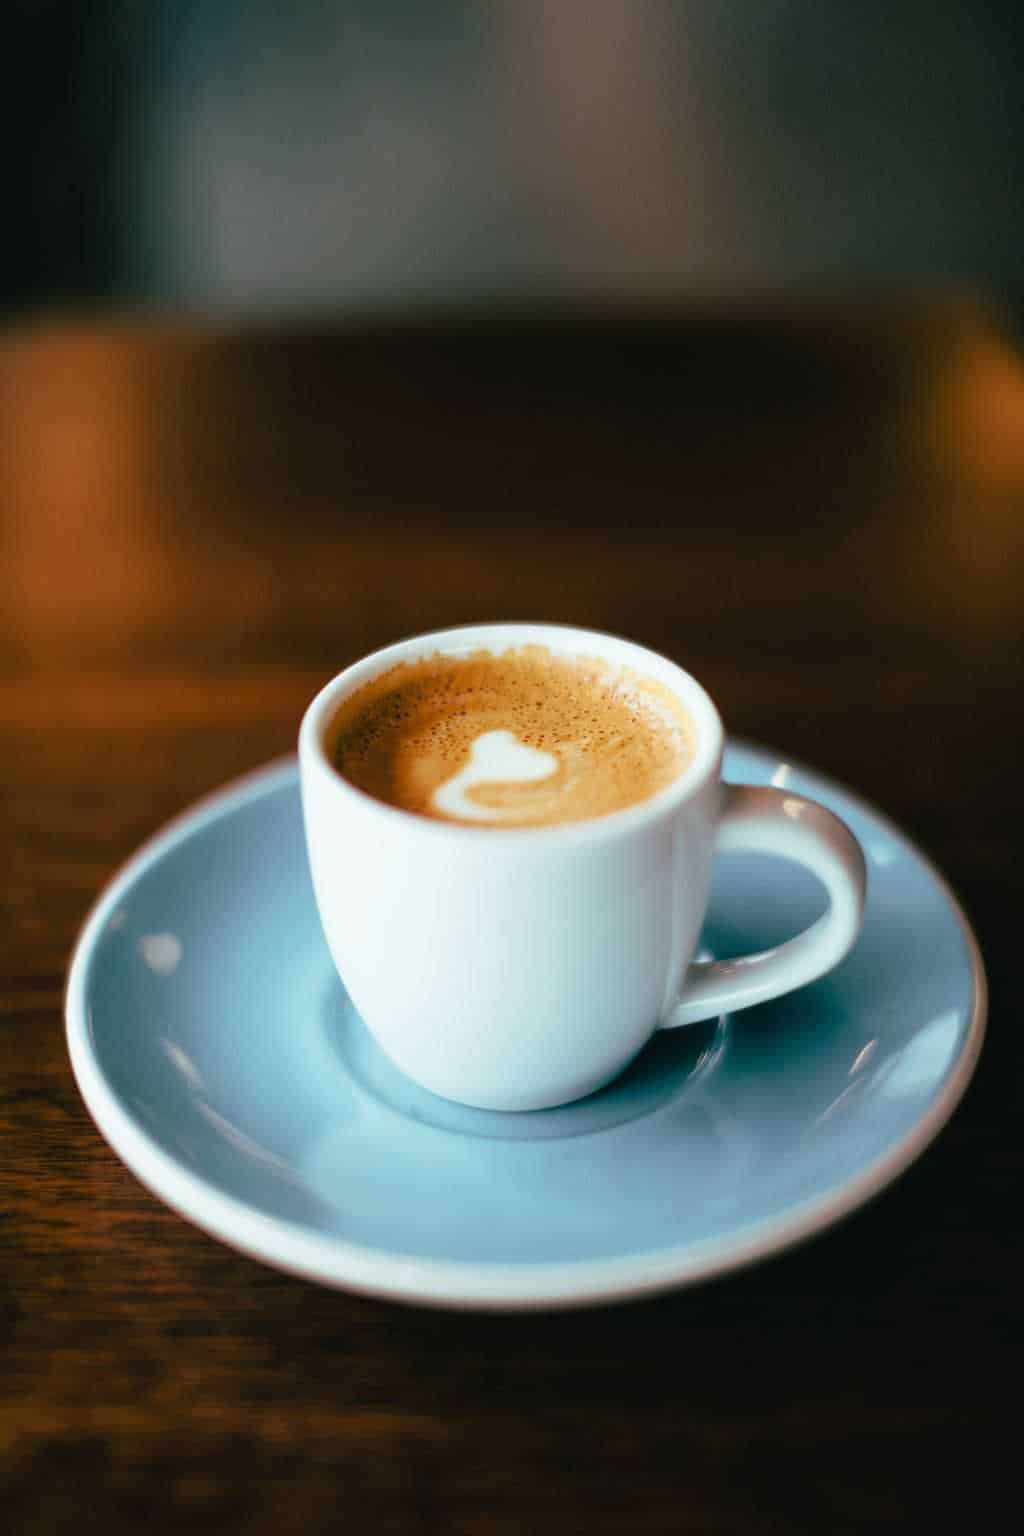 Macchiato with white milk heart latte art in small espresso cup on saucer